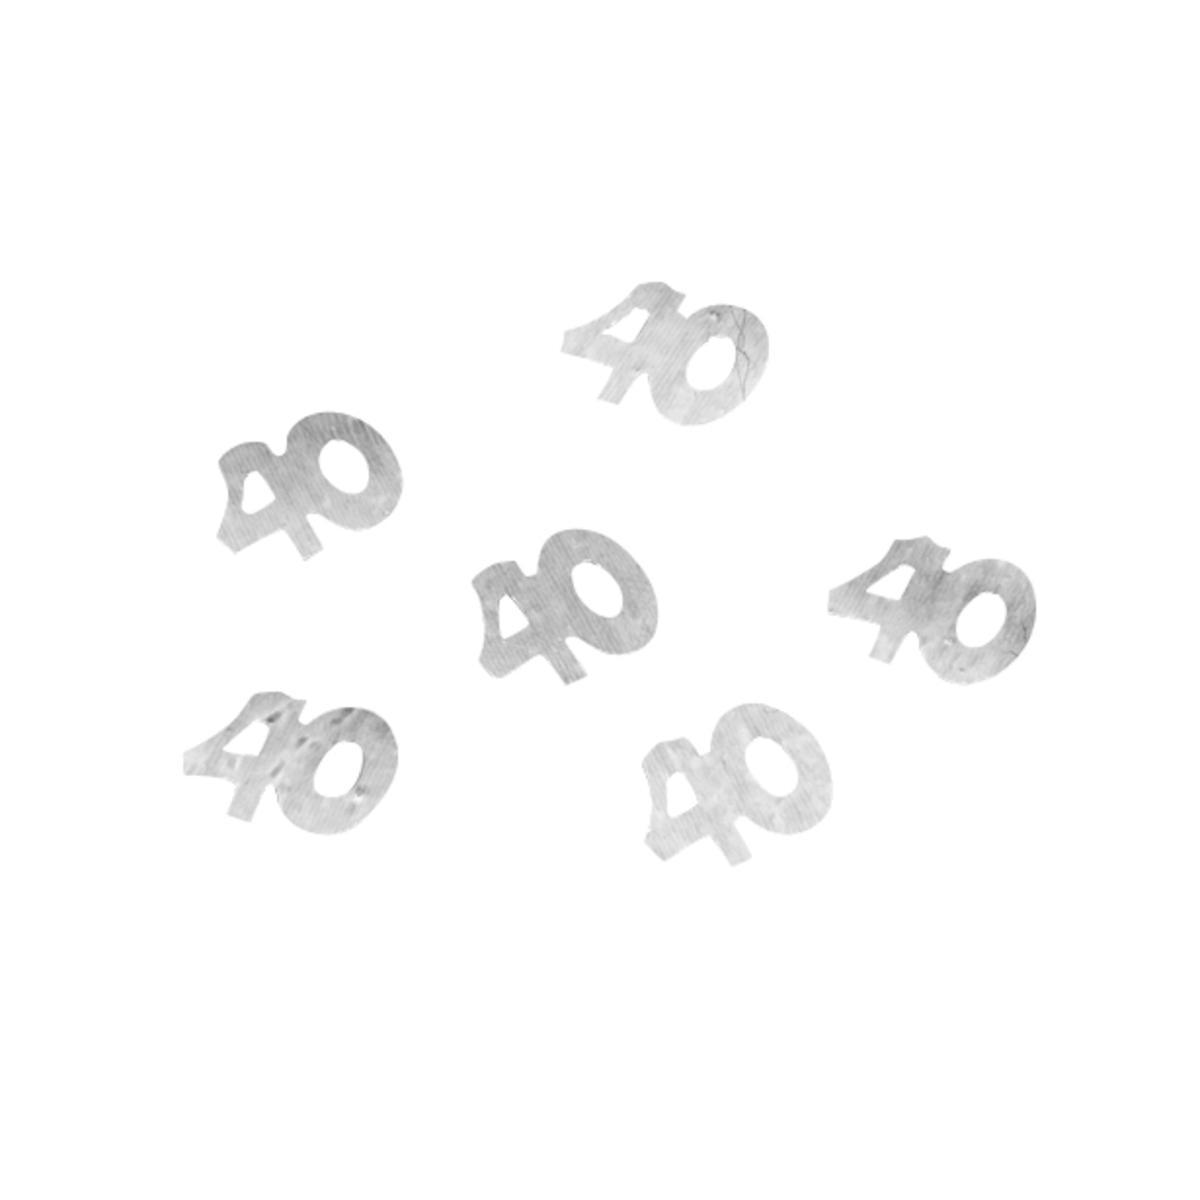 Confettis de table nombre 40 - Plastique - 10g - Argent